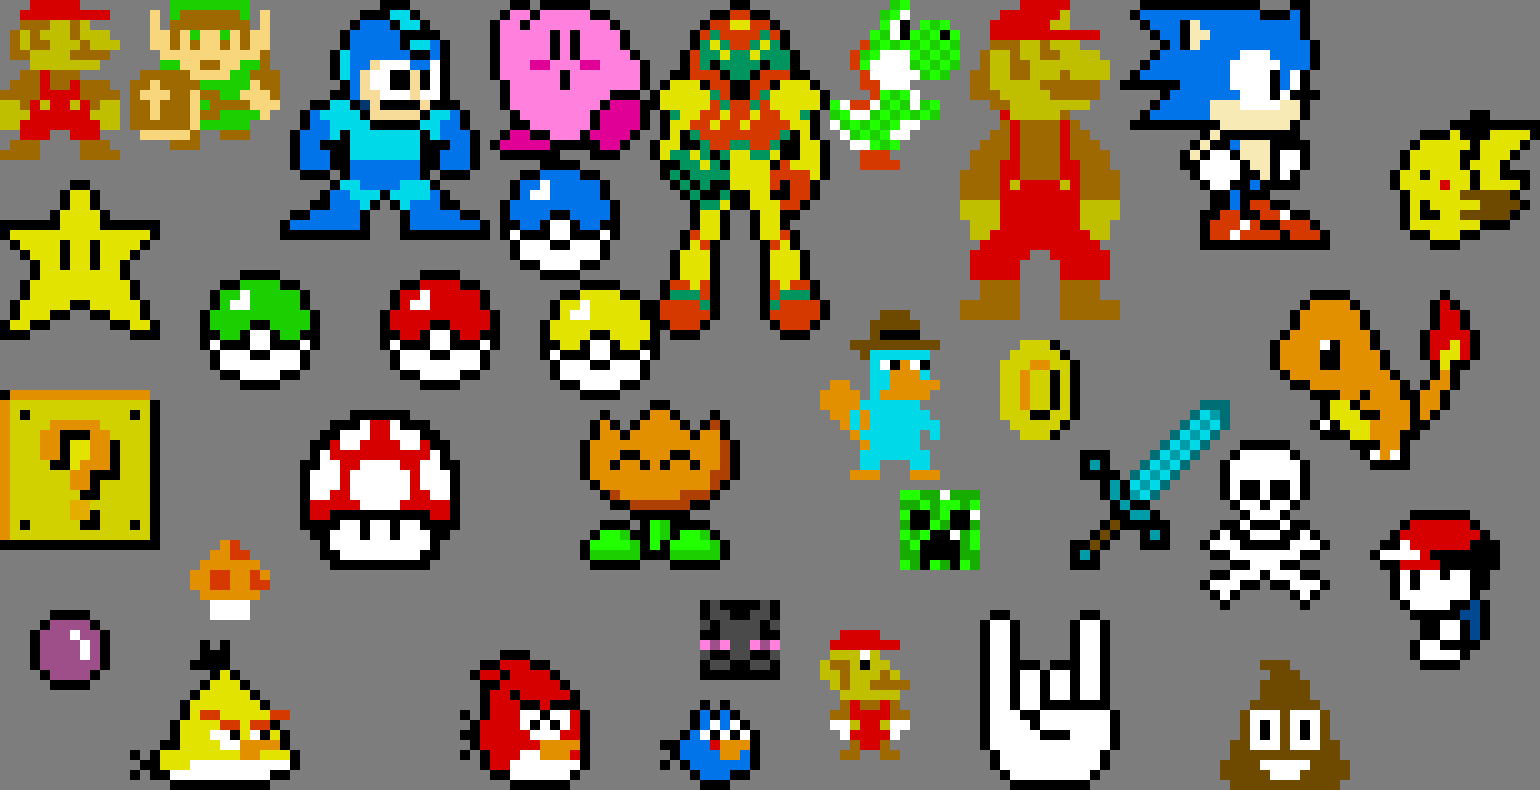 Марио пиксельный игра. Марио 8 бит персонажи. Марио Нинтендо 16 бит. Пиксель игры на Нинтендо. Игра герои пиксельные